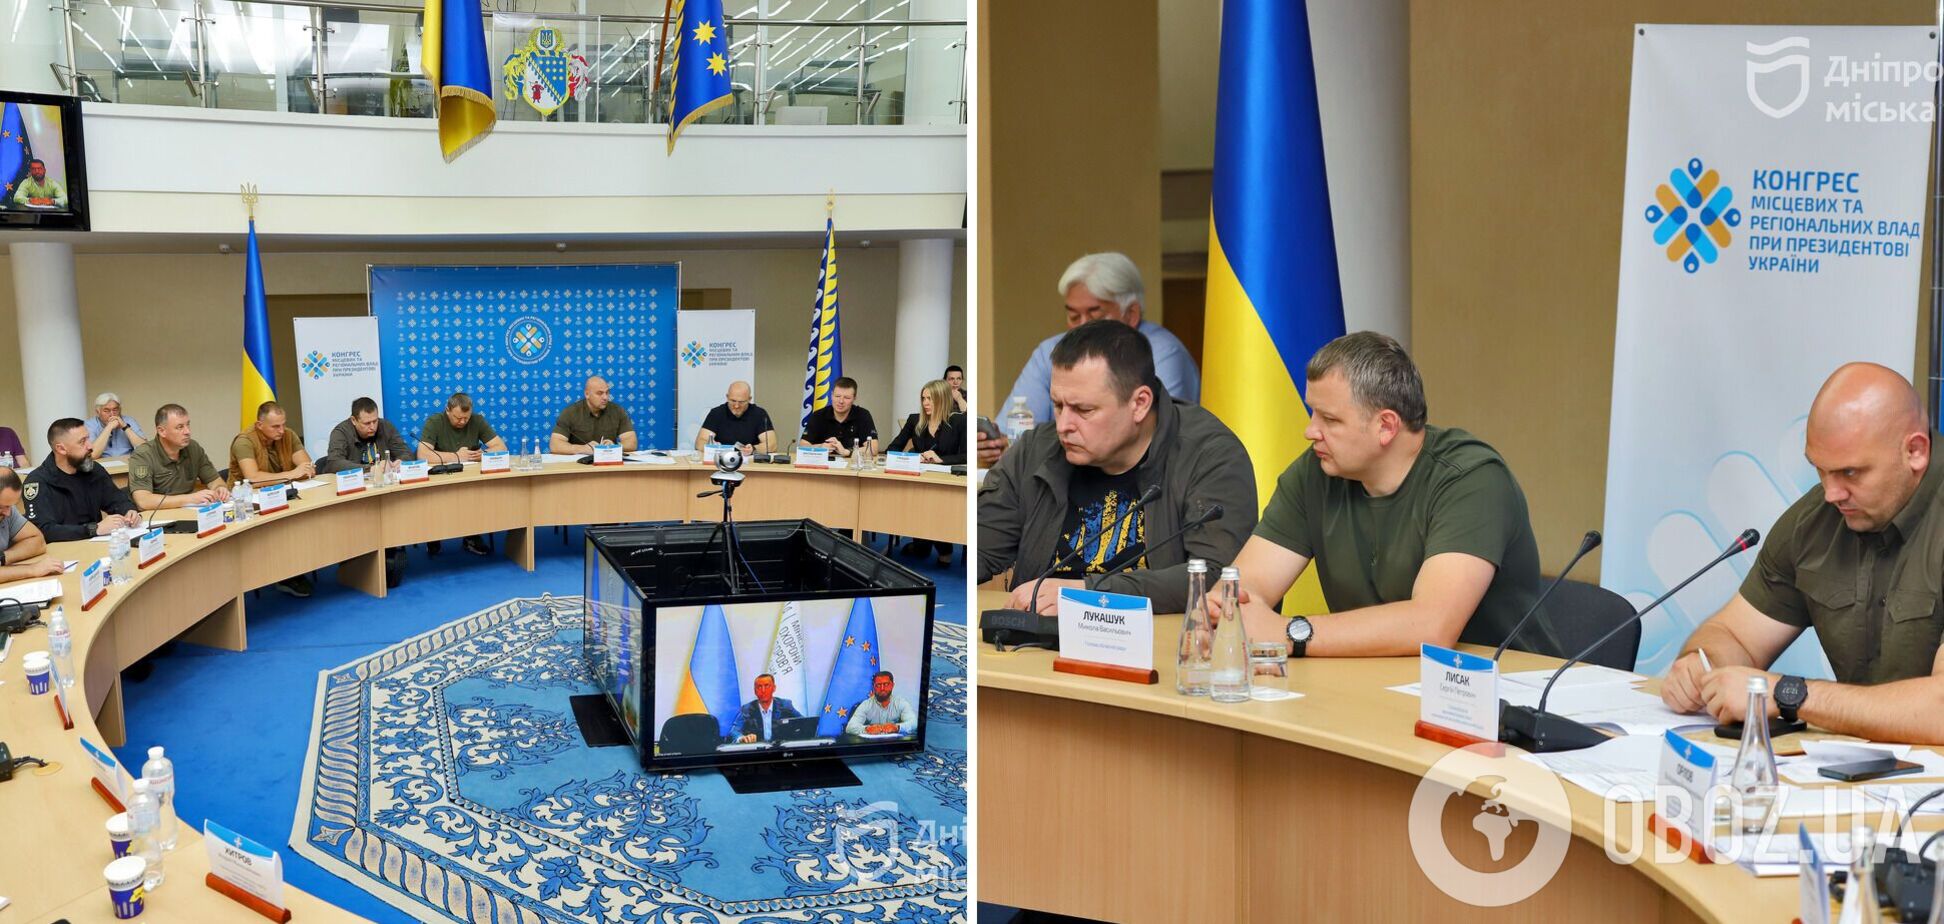 Руководители Днепра и области приняли участие в региональном заседании Конгресса при президенте Украины